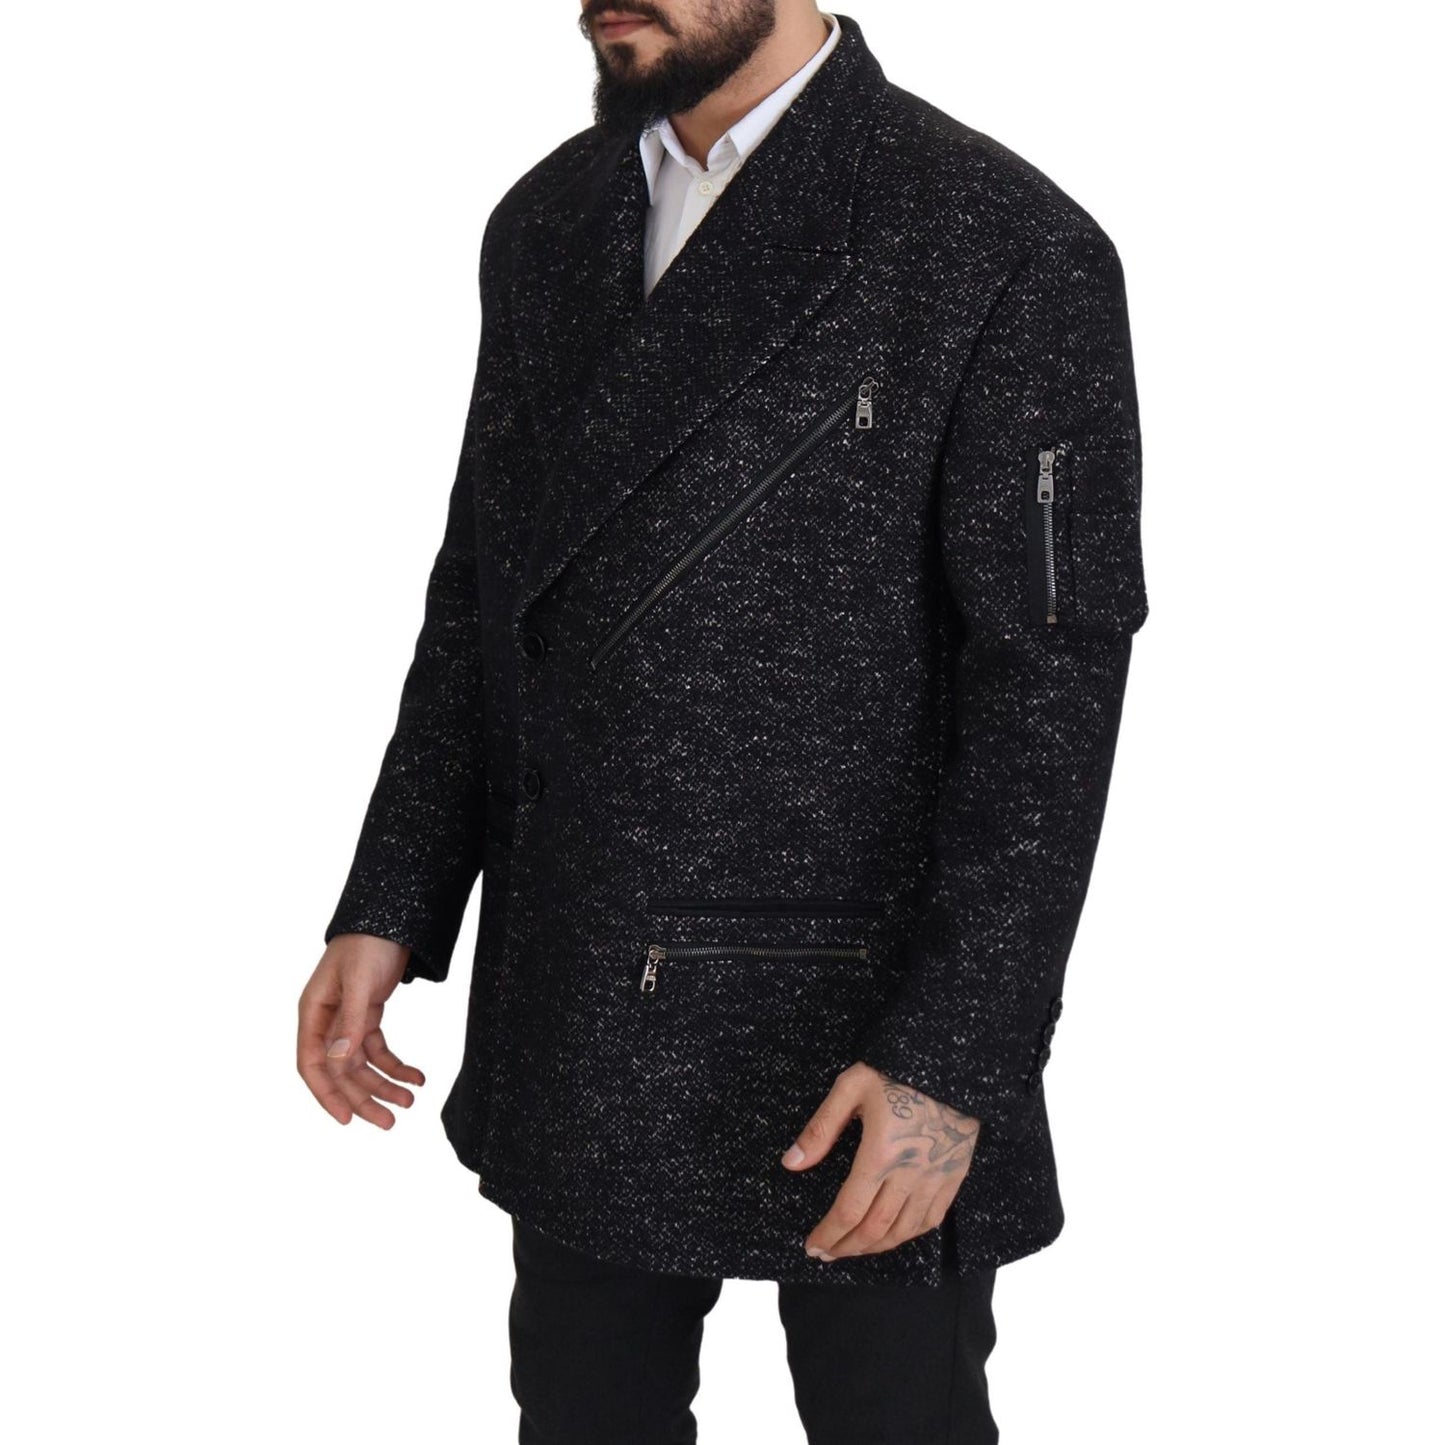 Dolce & Gabbana Sleek Patterned Wool Double Breasted Jacket black-wool-double-breasted-coat-men-jacket-1